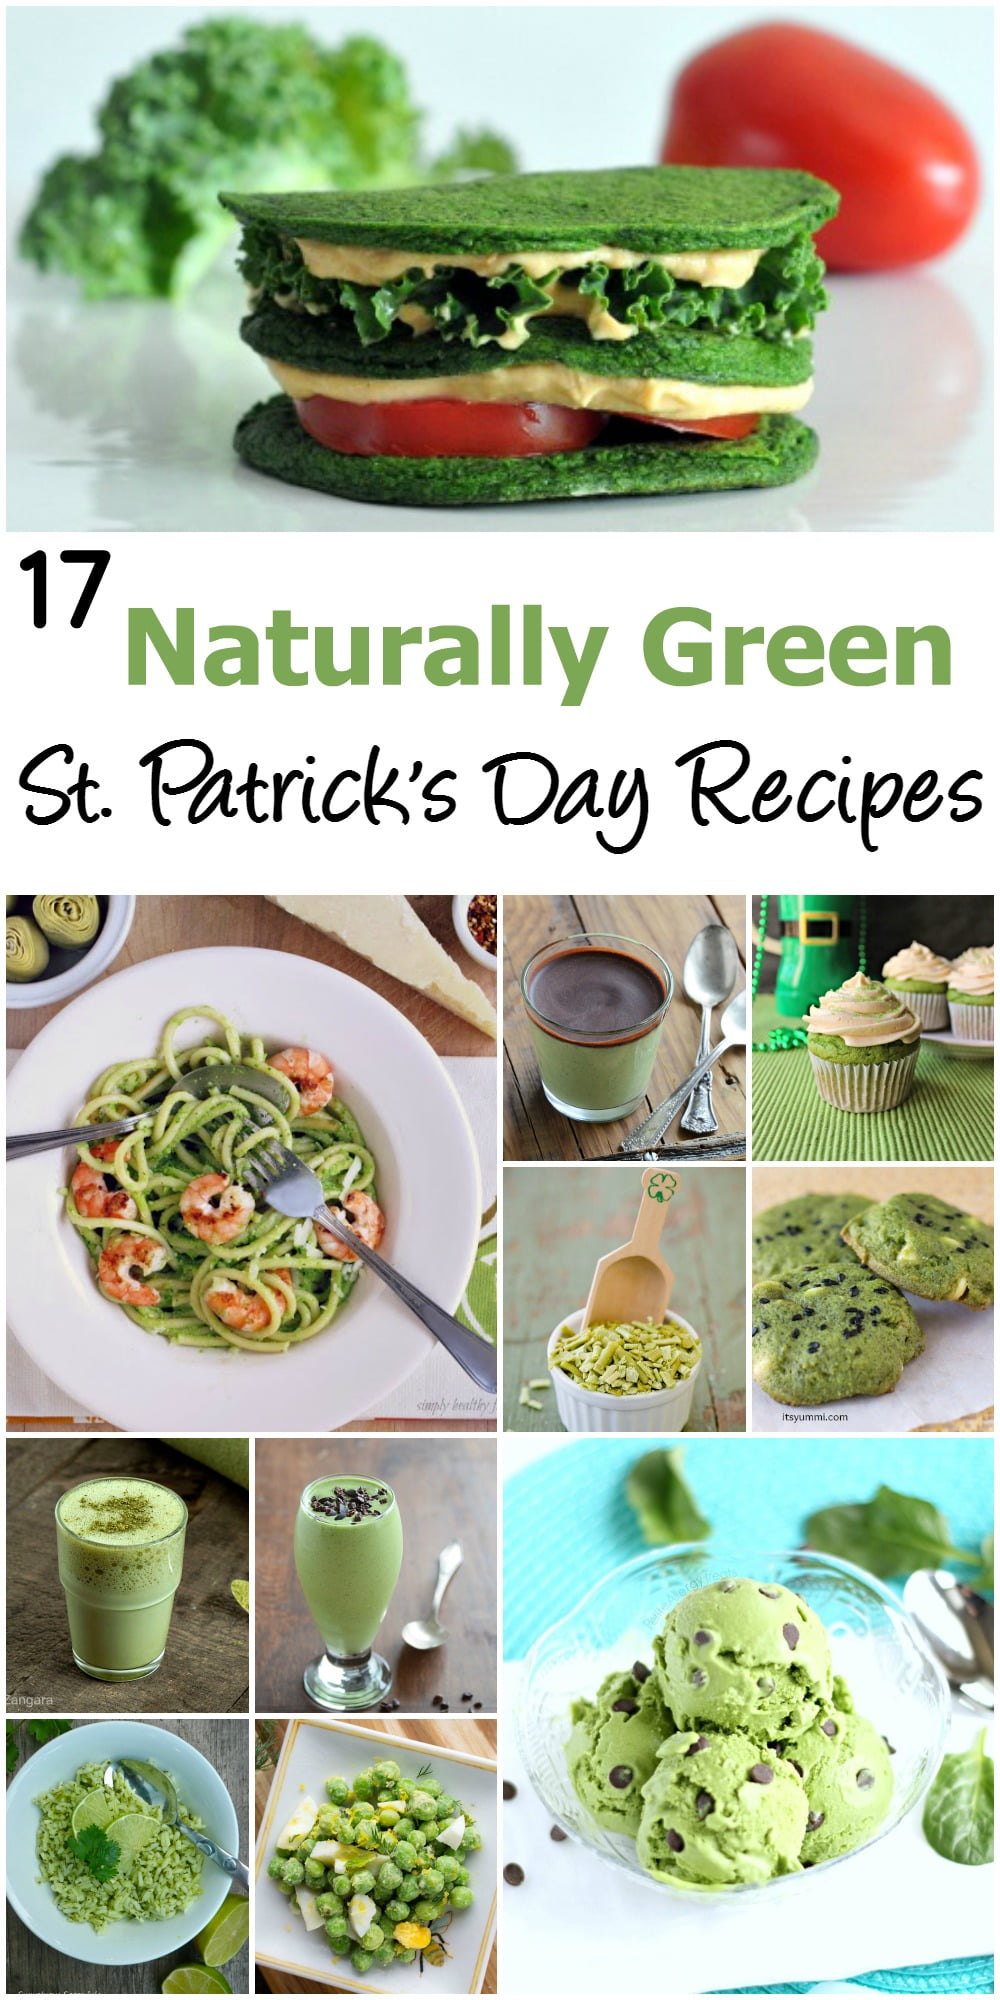 17 Naturally Green Recipes for St. Patrick's Day ~ ItsYummi.com